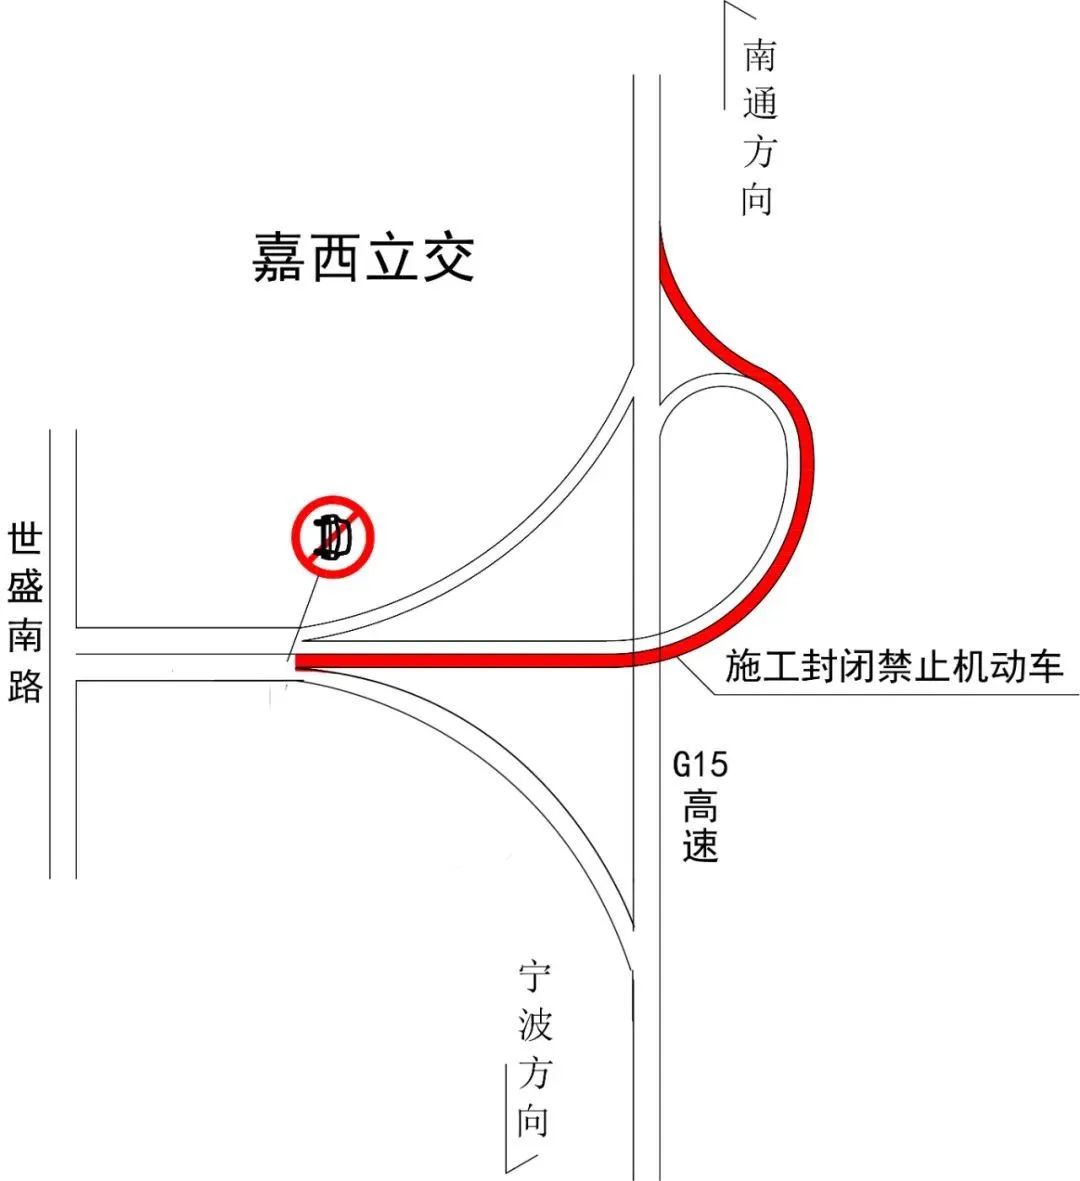 10月14日起G15沈海高速嘉西立交南通方向禁止通行